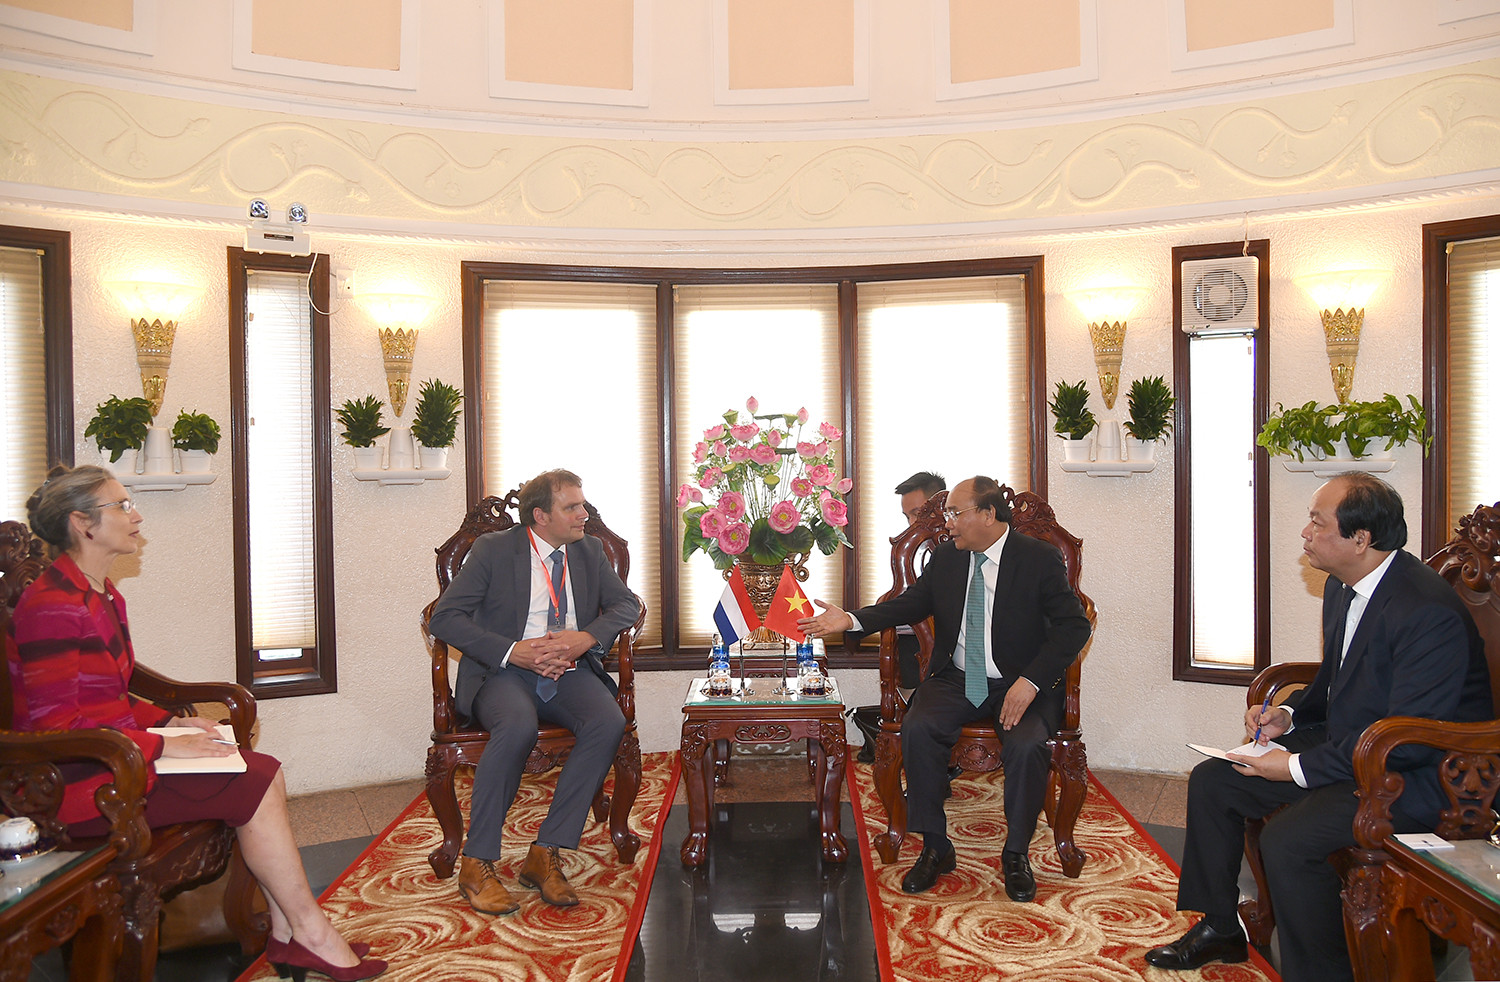 Thủ tướng tiếp Phó Cao ủy Chương trình Đồng bằng Hà Lan và thị sát vùng Đồng bằng sông Cửu Long